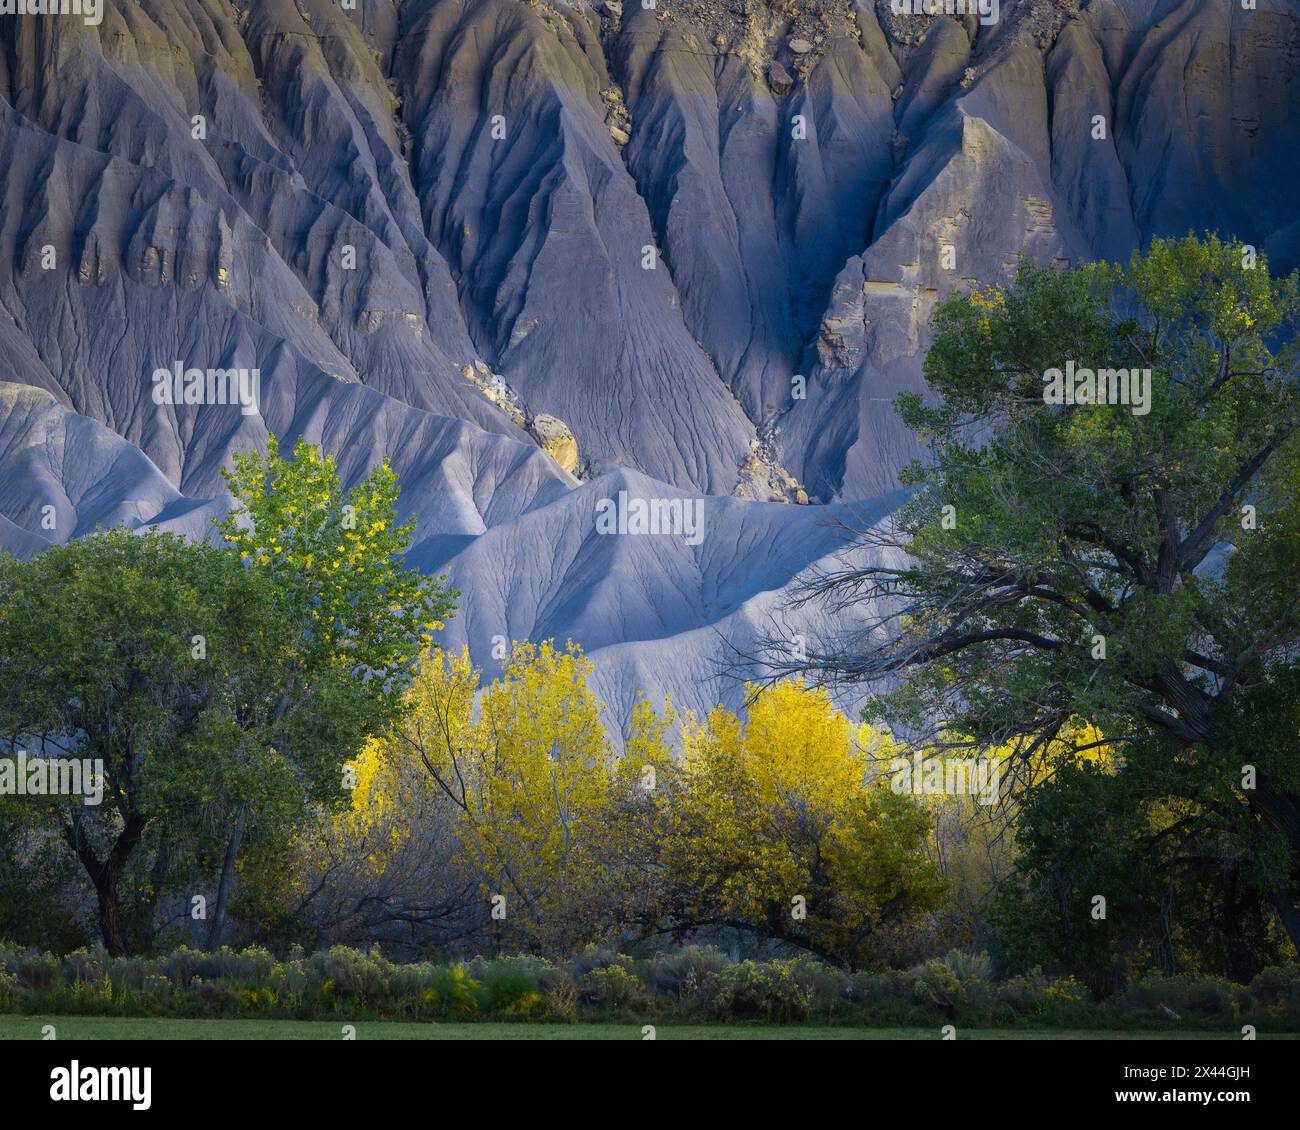 Stati Uniti, Utah. Albero di cottonwood giallo e montagna grigia in autunno. Foto Stock